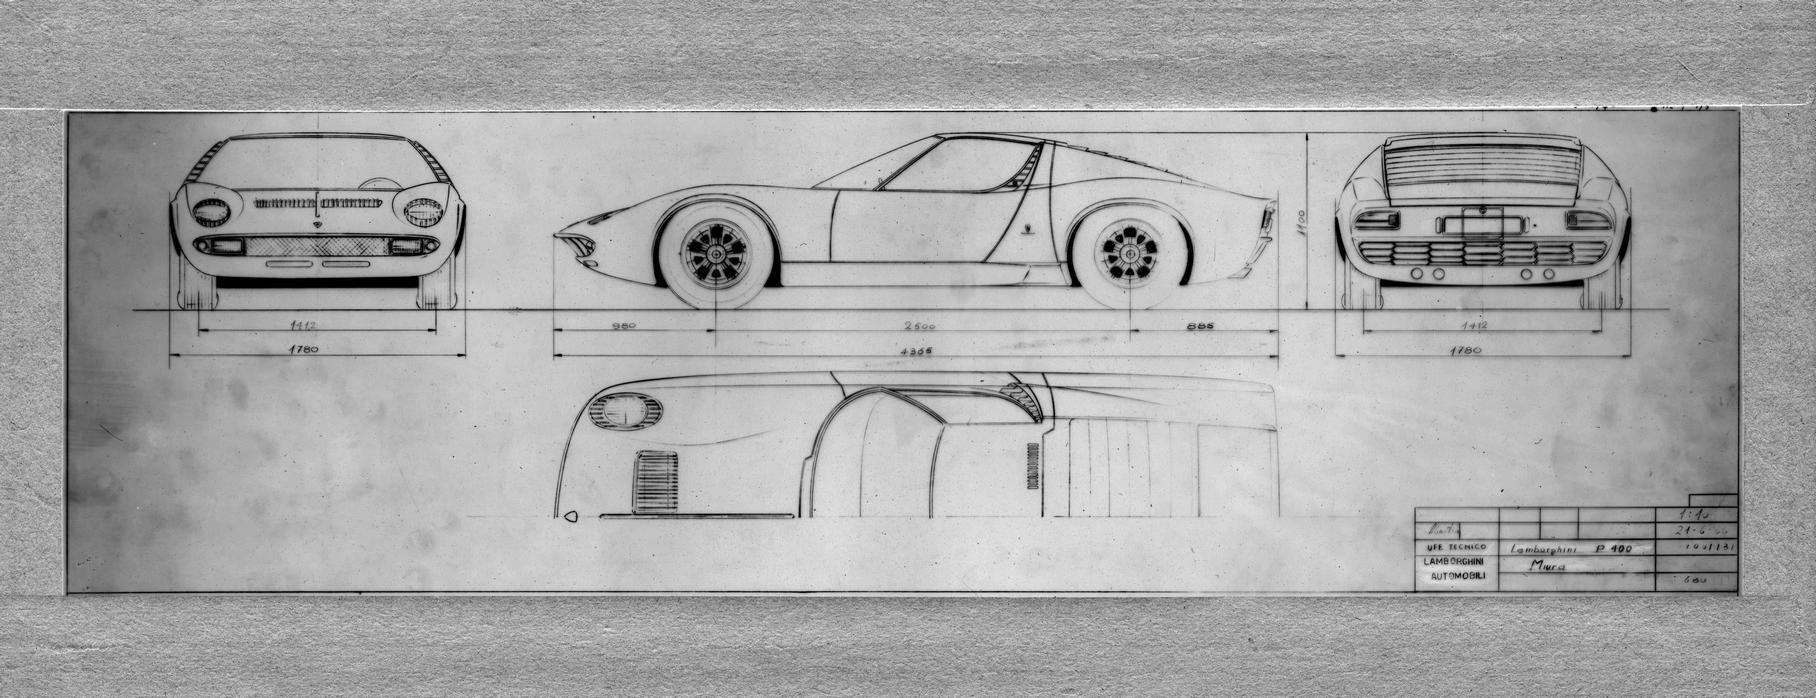 Эскиз кузова Miura в трёх проекциях из архива Lamborghini